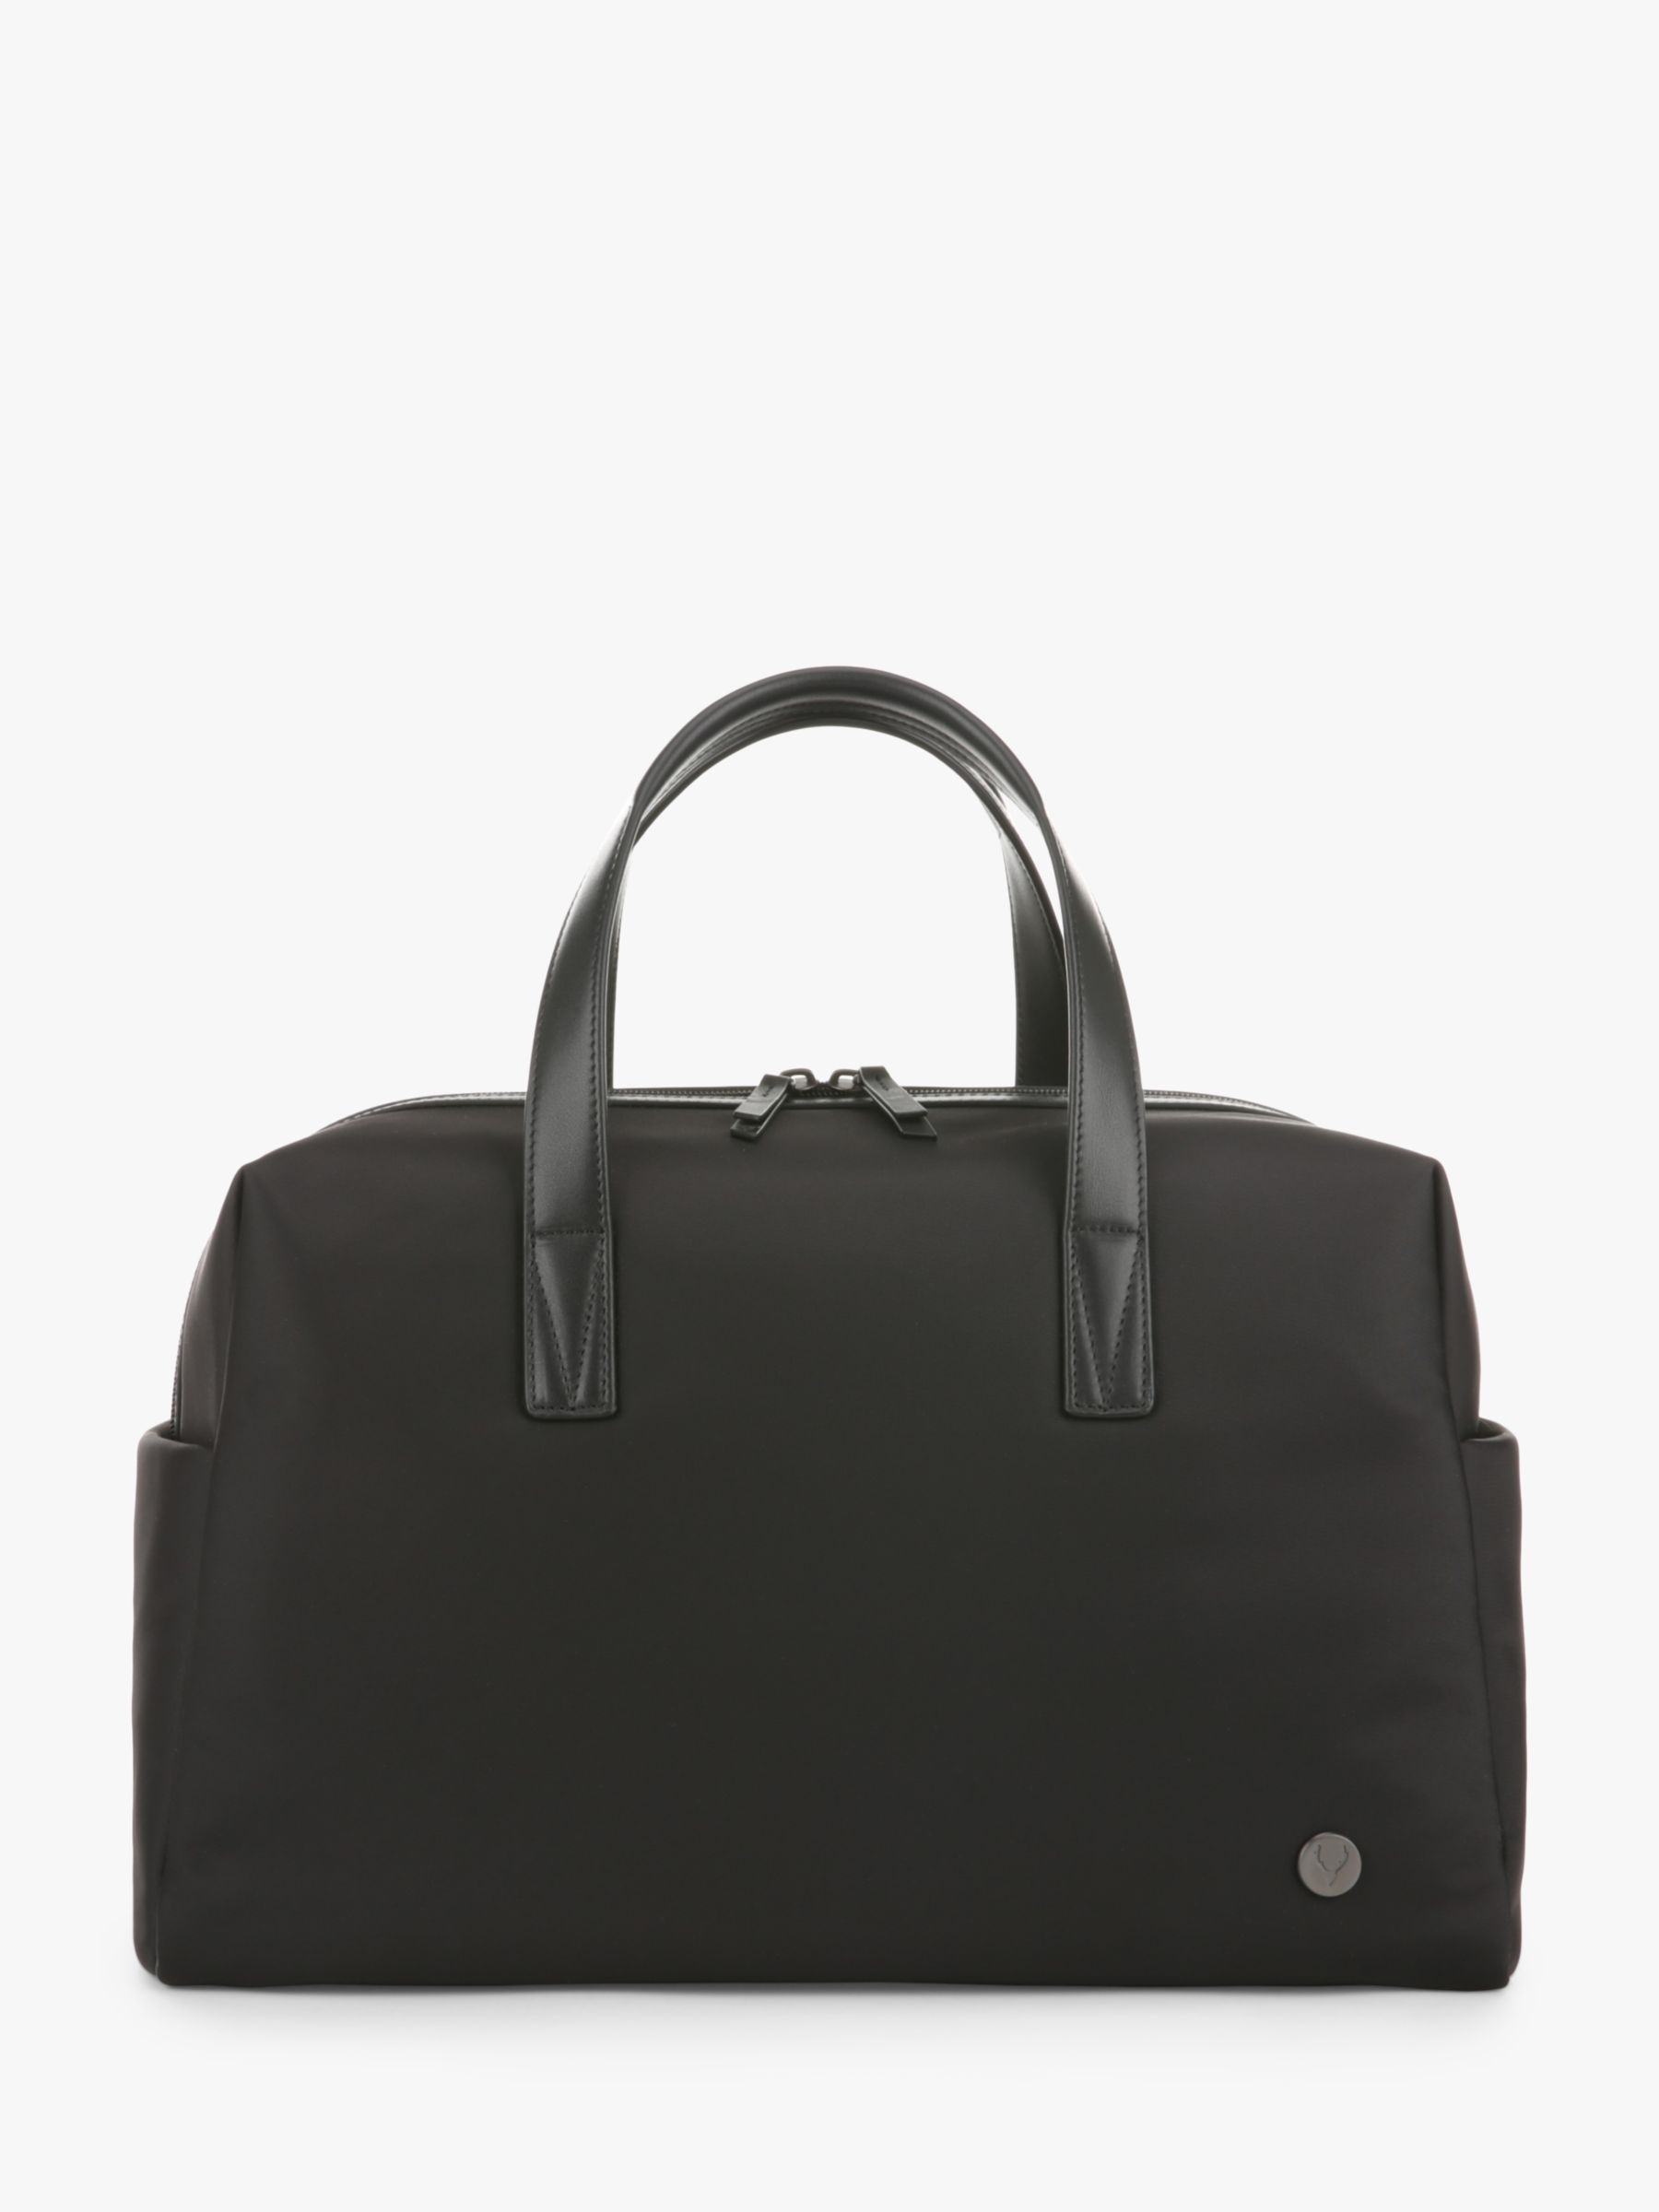 Ночная сумка Челси Antler, черный легкий жесткий спиннер stratos 20 дюймов черная ручная сумка